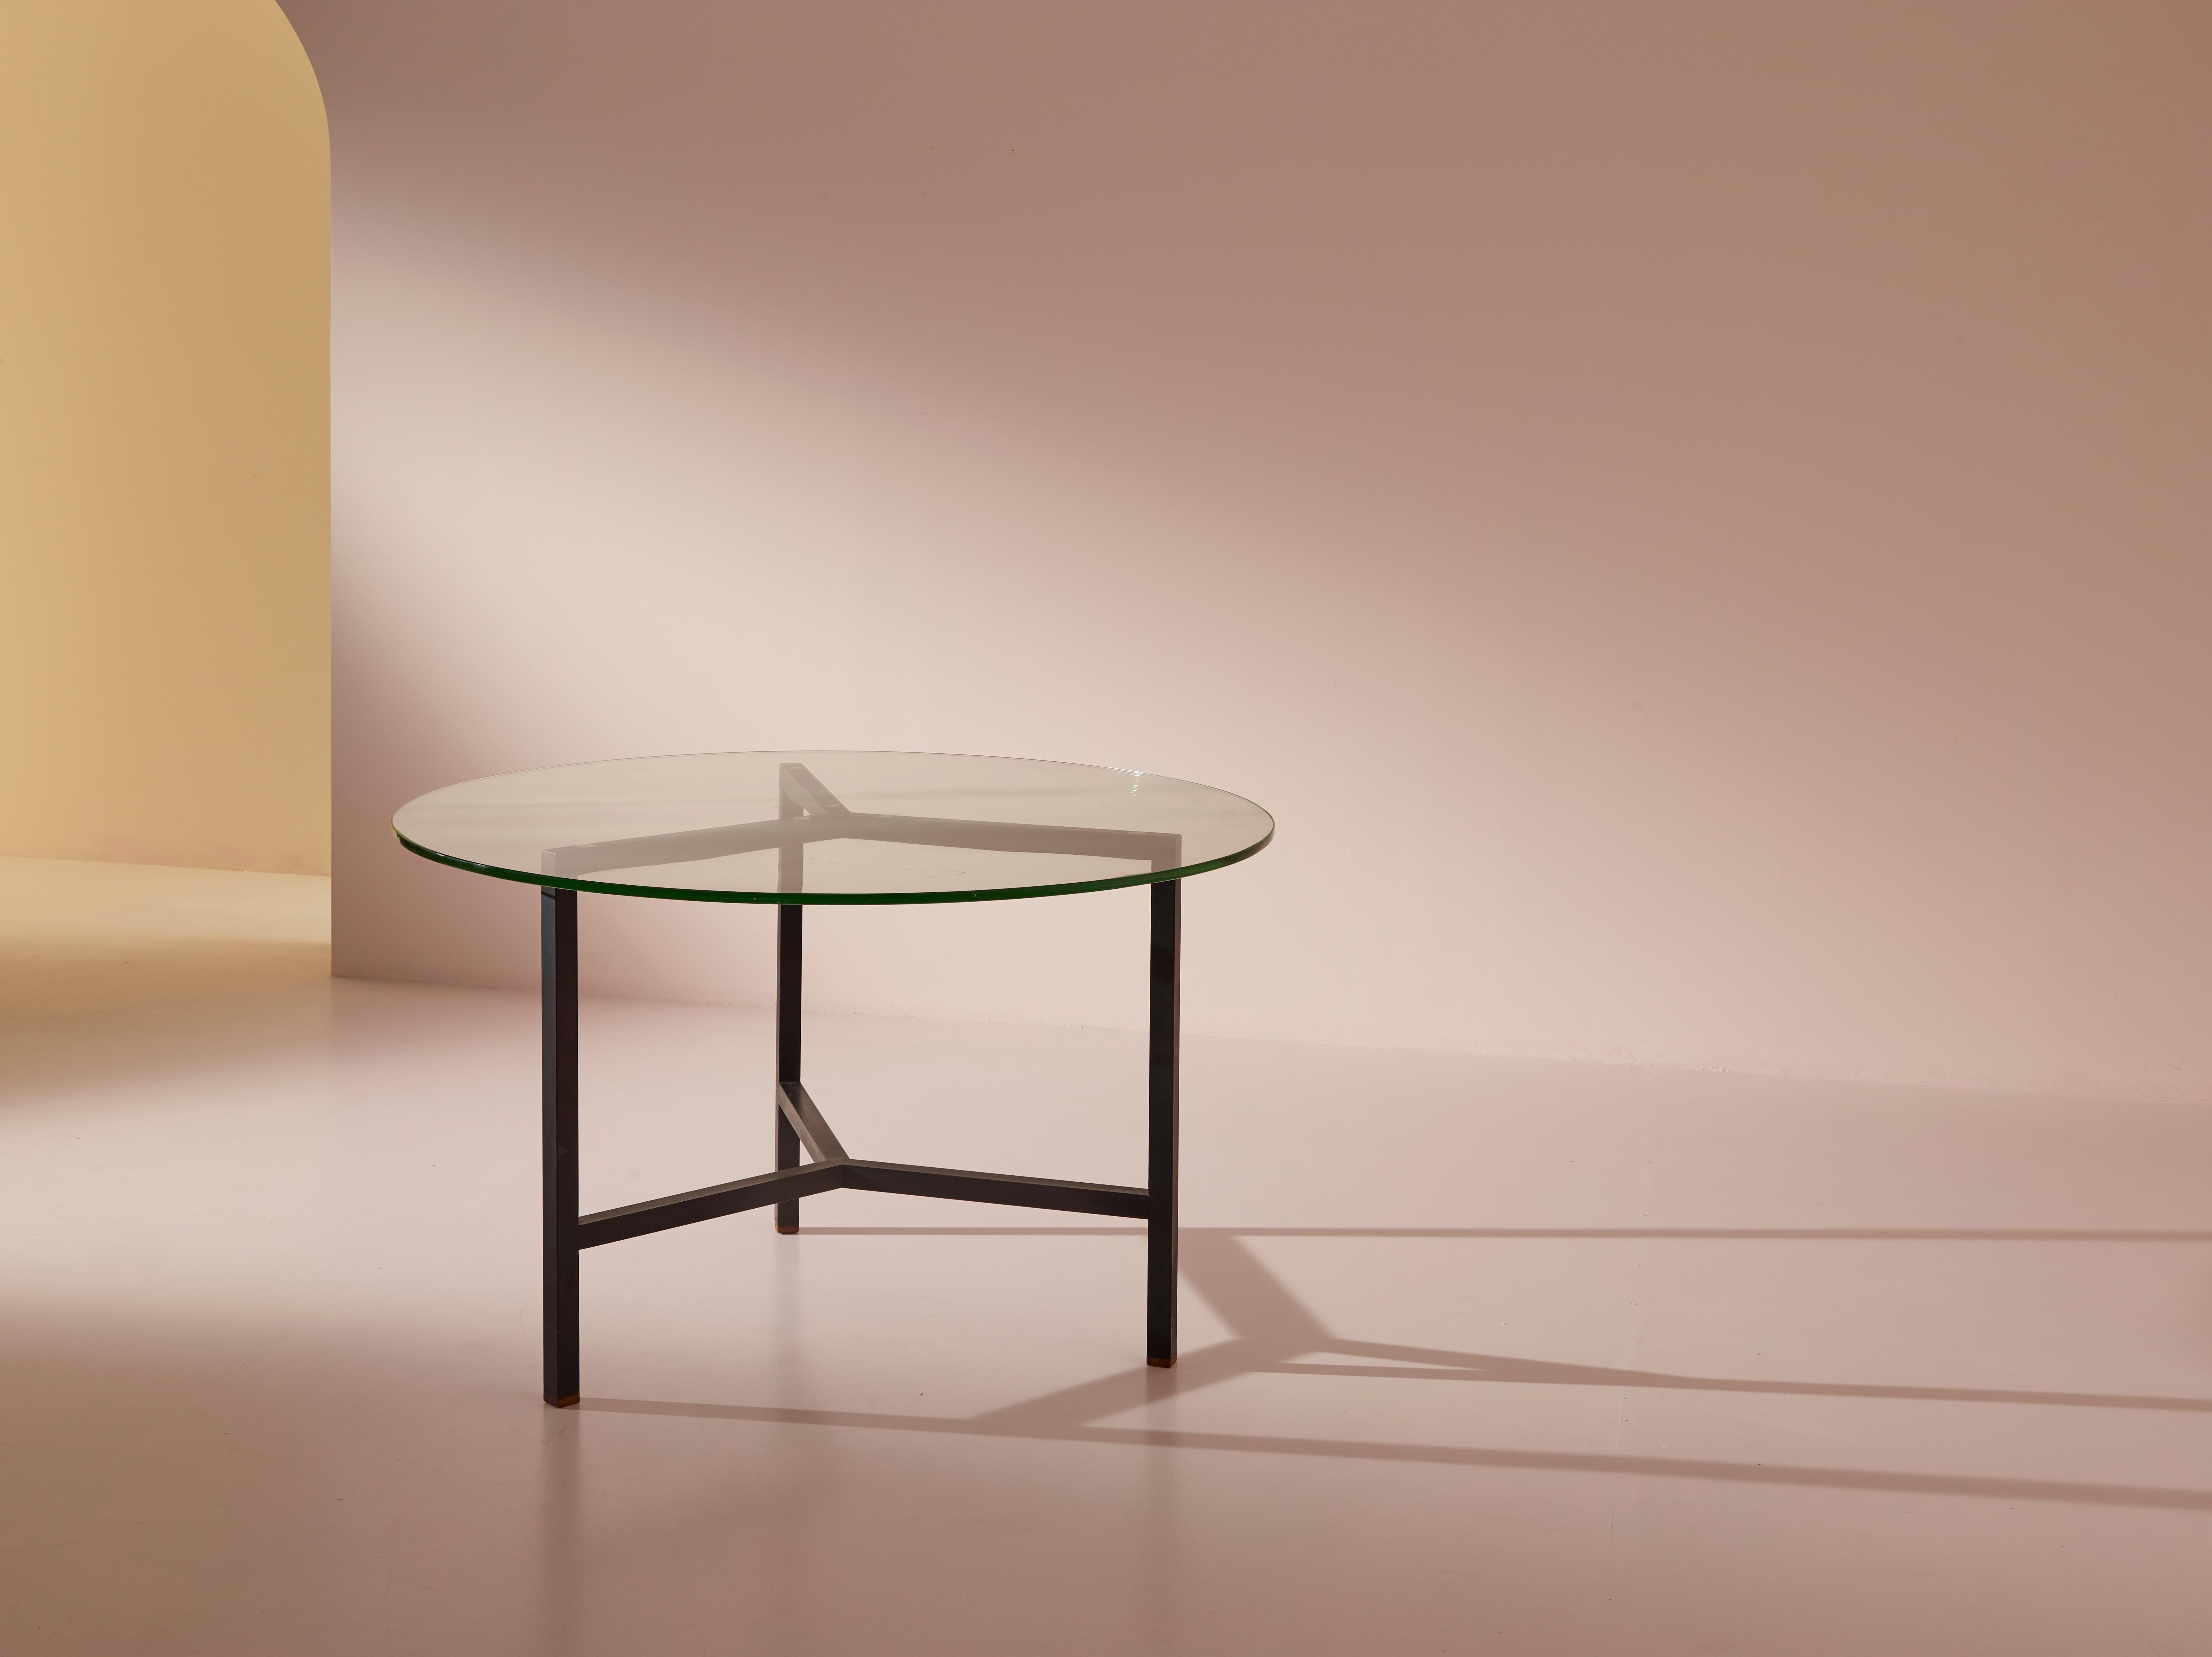 Ein runder Esstisch aus Metall und Glas aus italienischer Produktion aus den 1950er Jahren. 

In seiner Schlichtheit bringt dieser kleine Tisch das Potenzial zweier Materialien zum Ausdruck, die auf den ersten Blick gegensätzlich erscheinen, aber